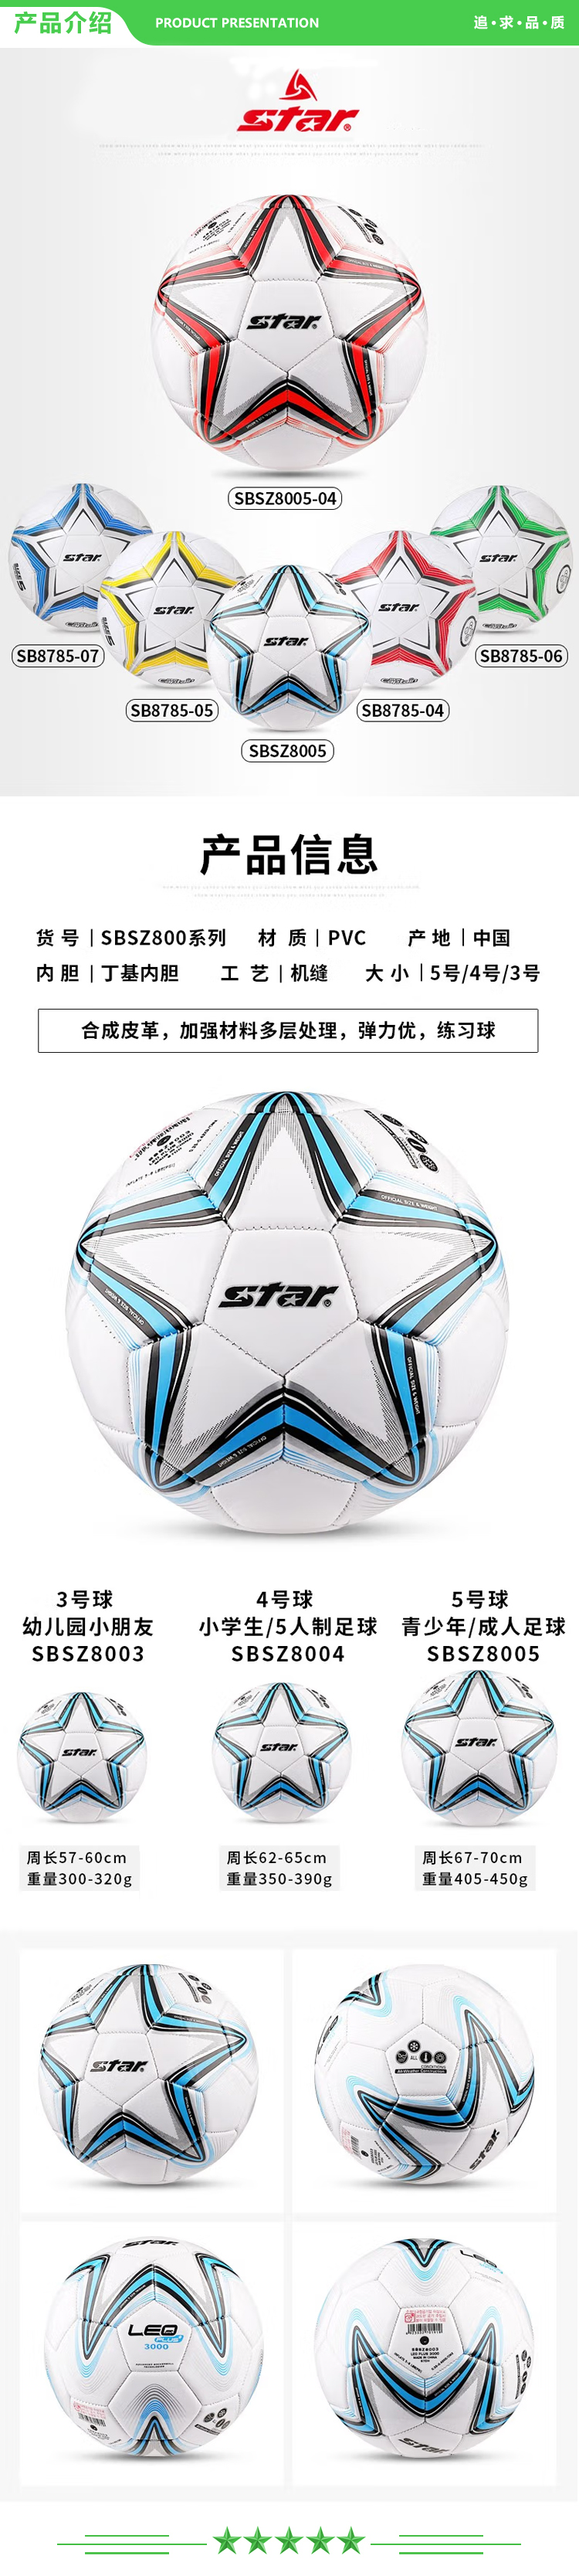 世达 star SBSZ8003【入门款】蓝色3号幼儿园用球 足球 3号儿童足球.jpg